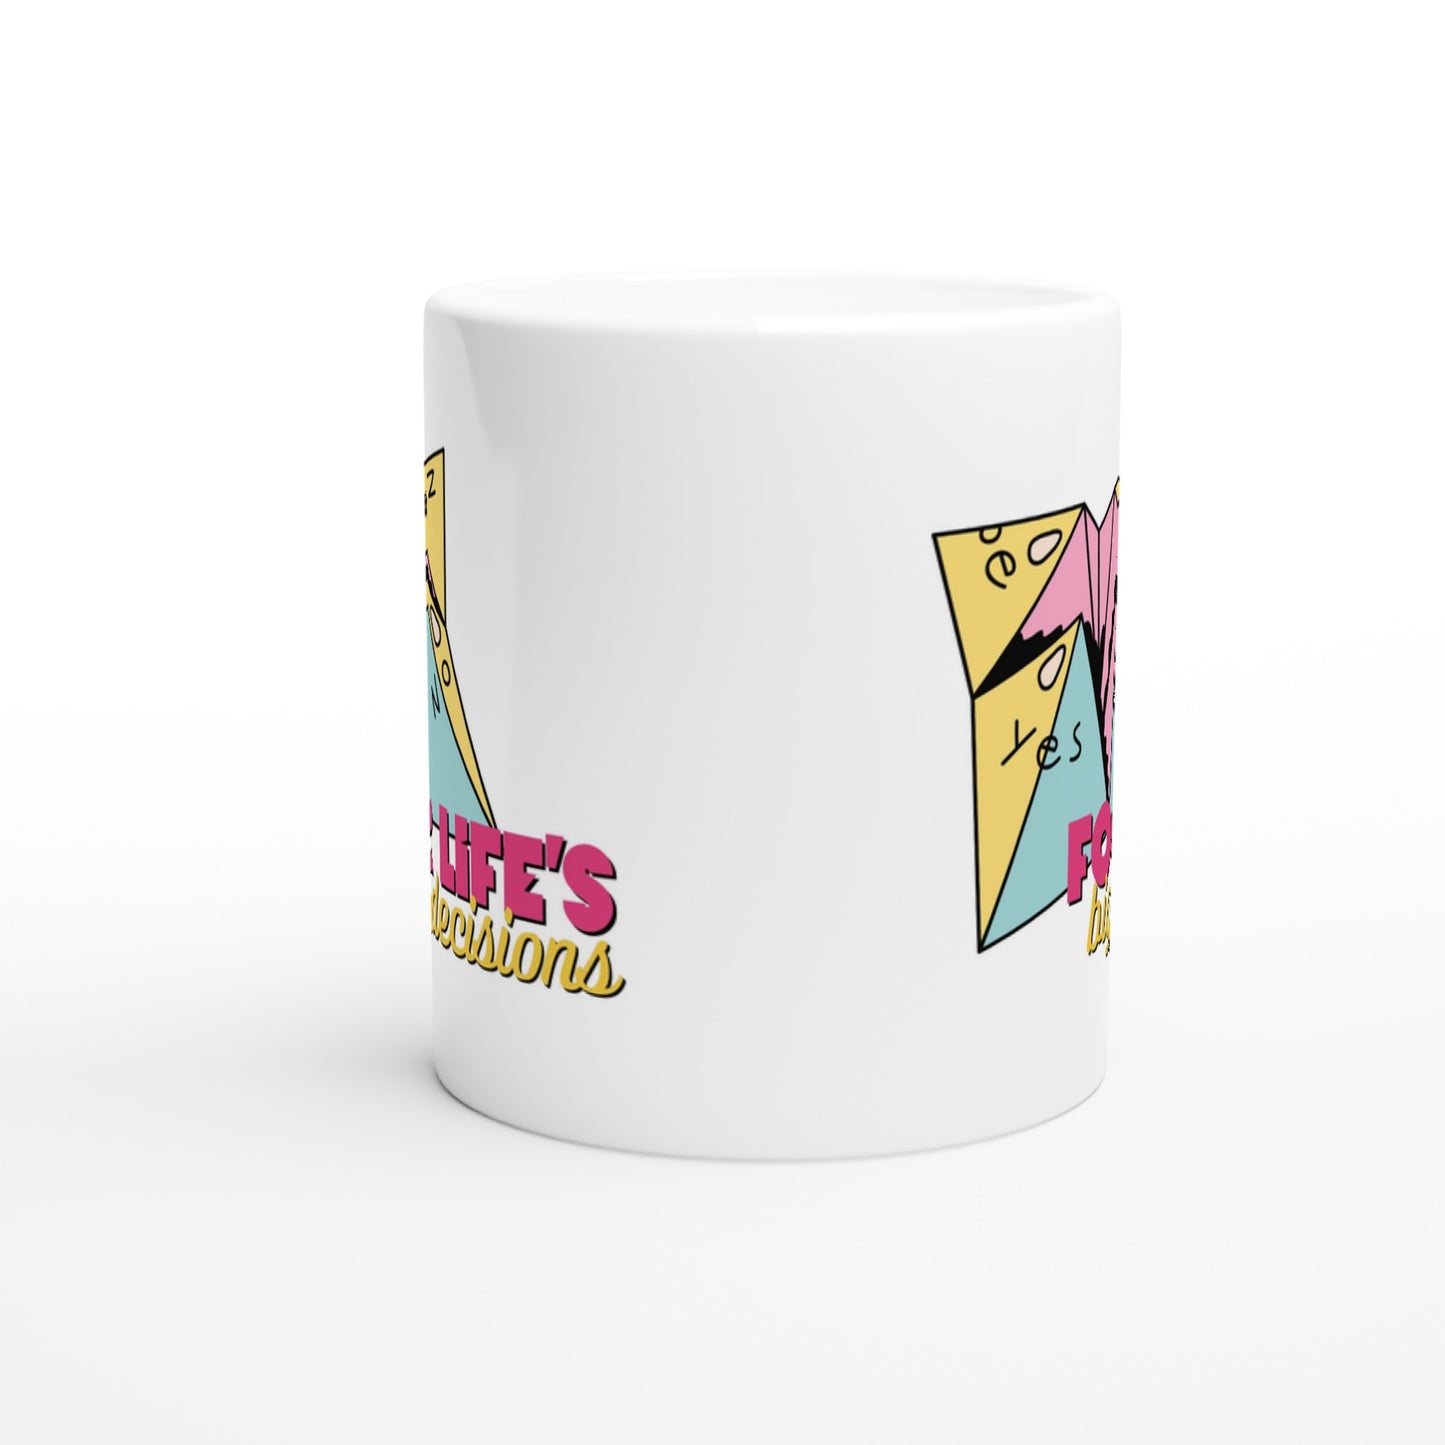 For Life's Big Decisions - White 11oz Ceramic Mug White 11oz Mug Funny Games